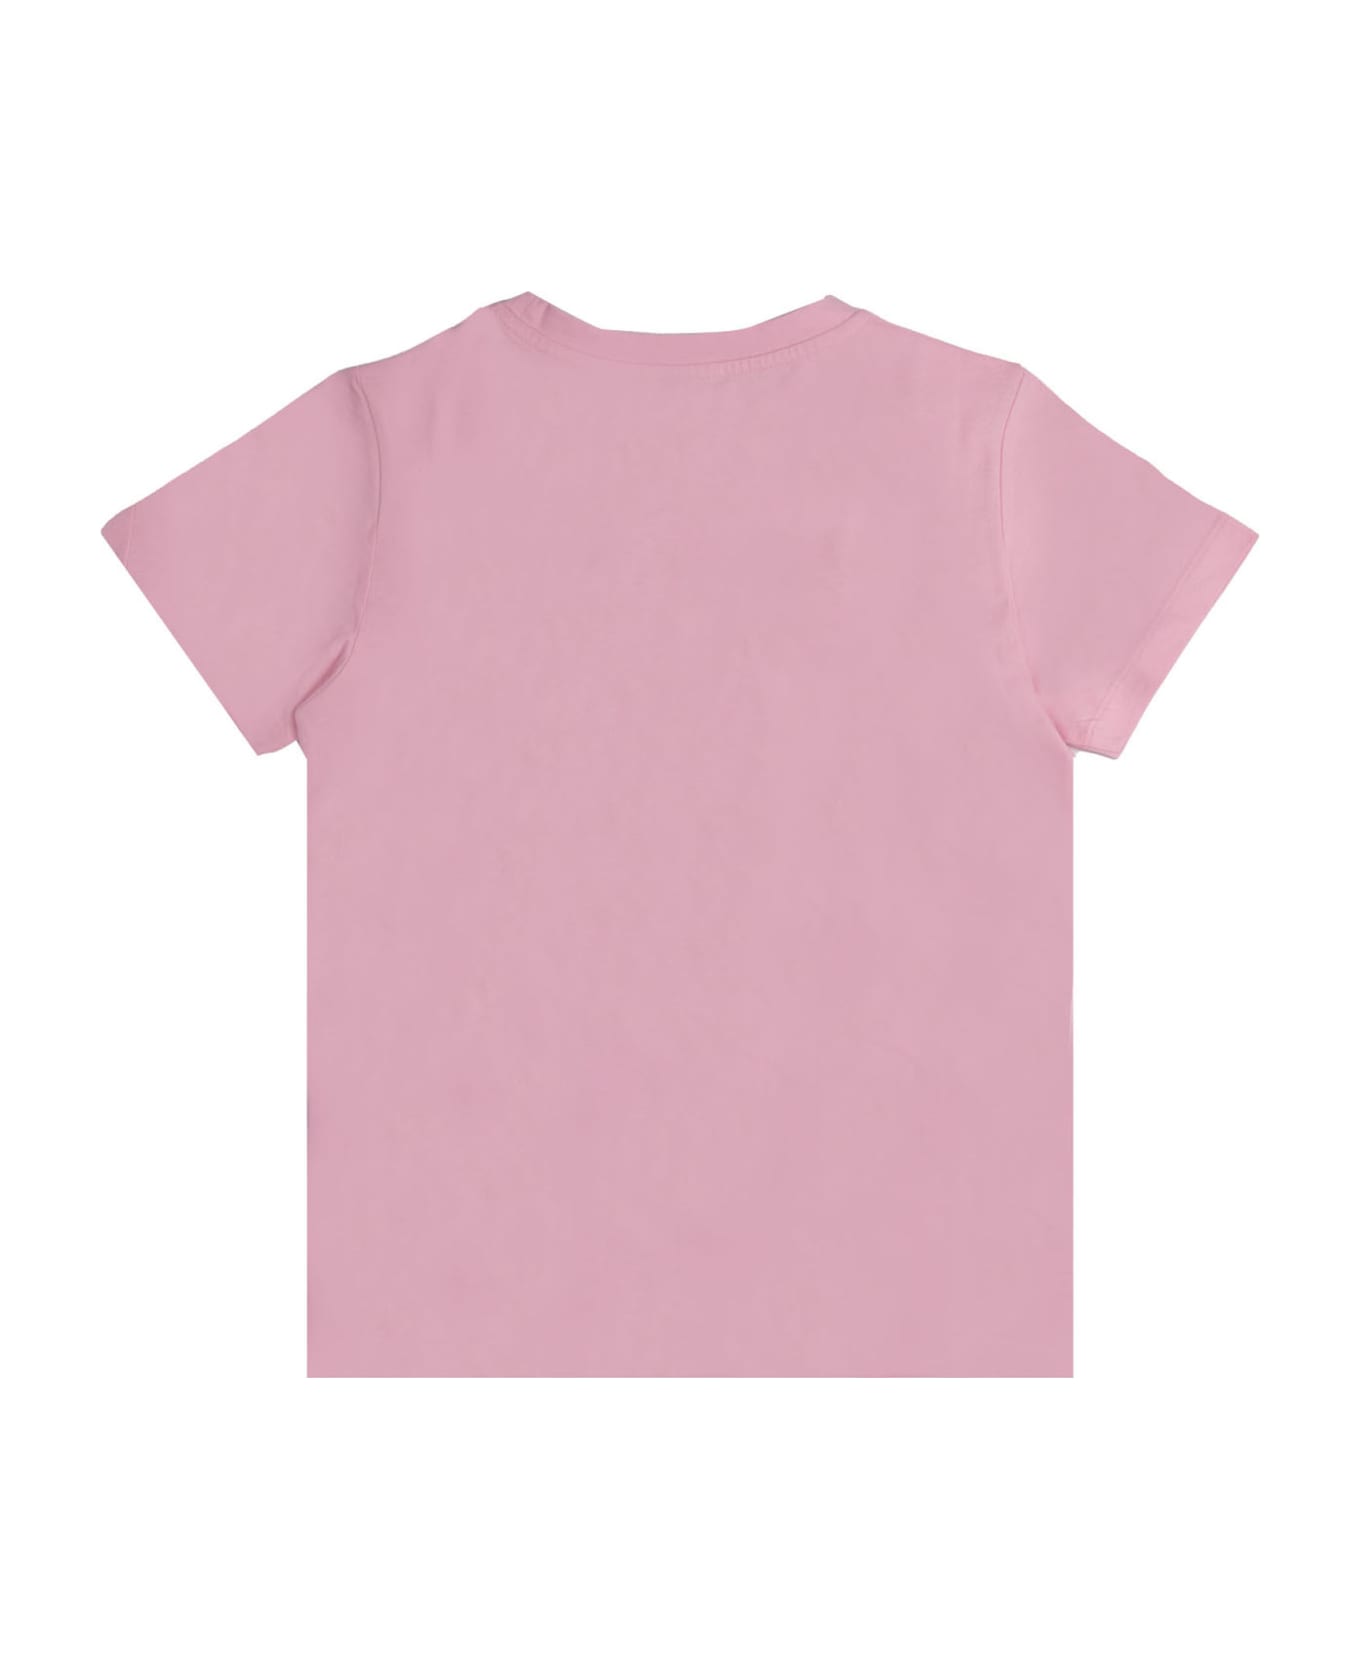 Balmain Cotton T-shirt - Rose